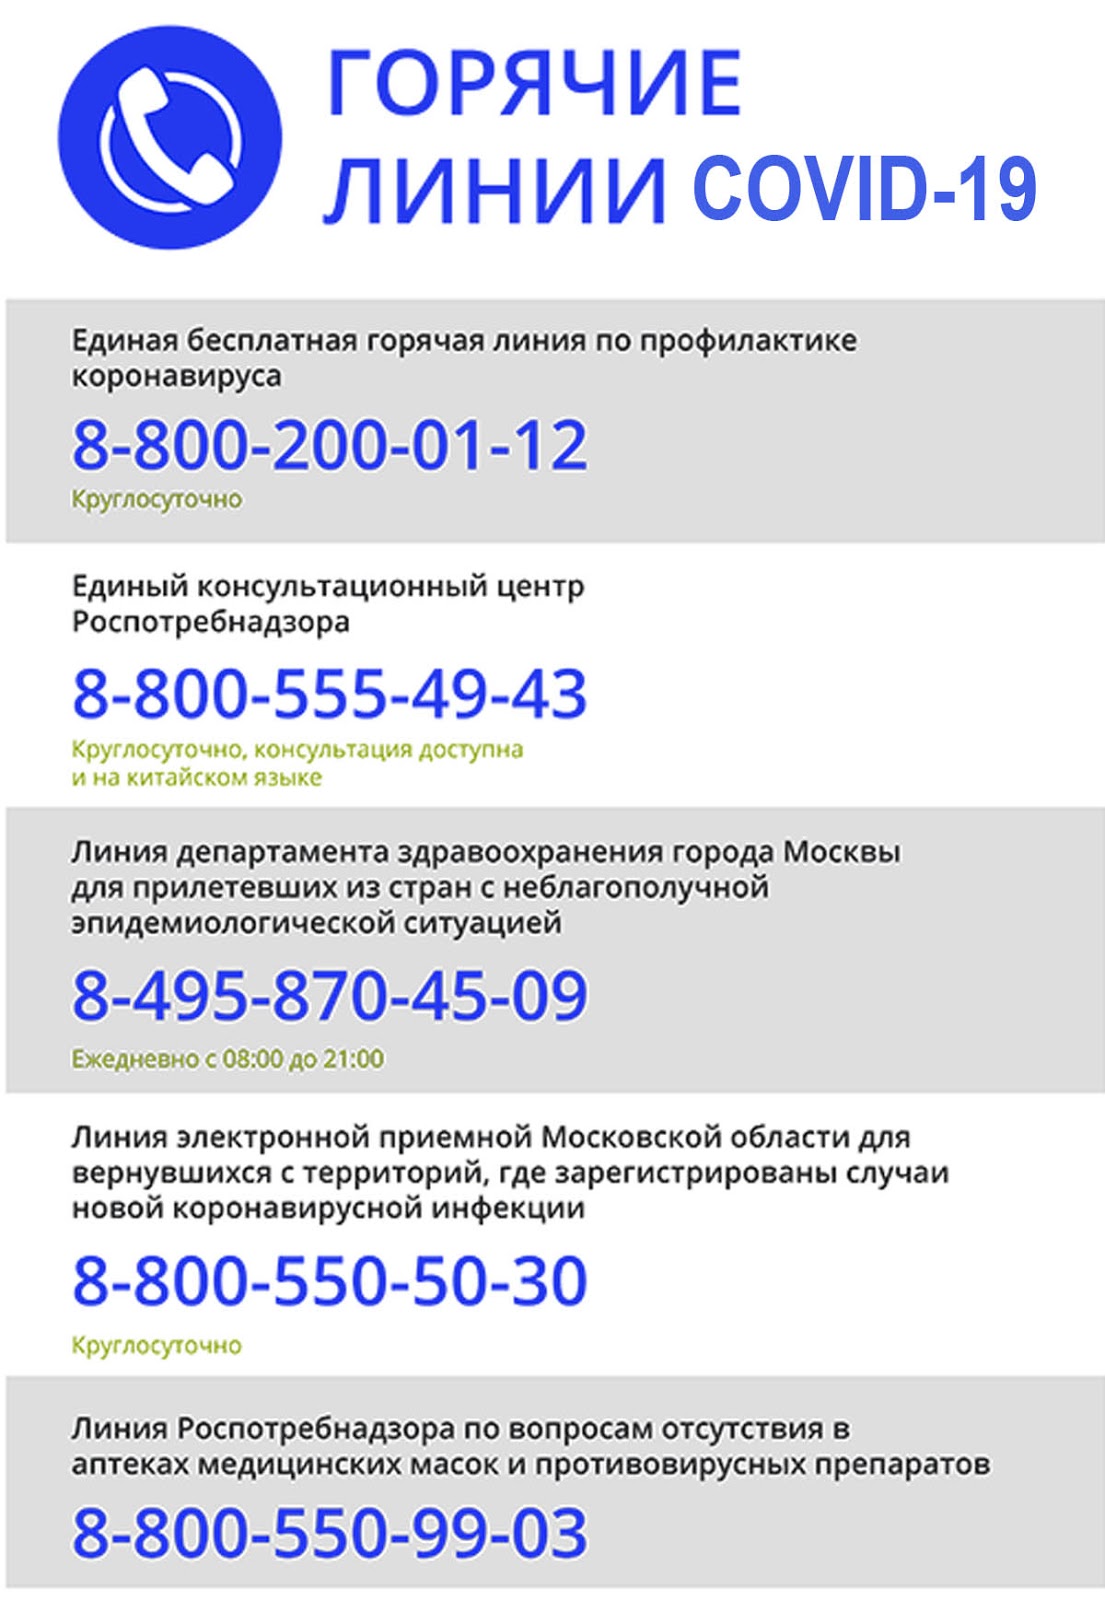 Открытие телефон бесплатный круглосуточно. Номер горячей линии портала Узбекистана. Горячая линия Татфондбанка телефон бесплатный. Номер телефона горячей линии Росавтодор.